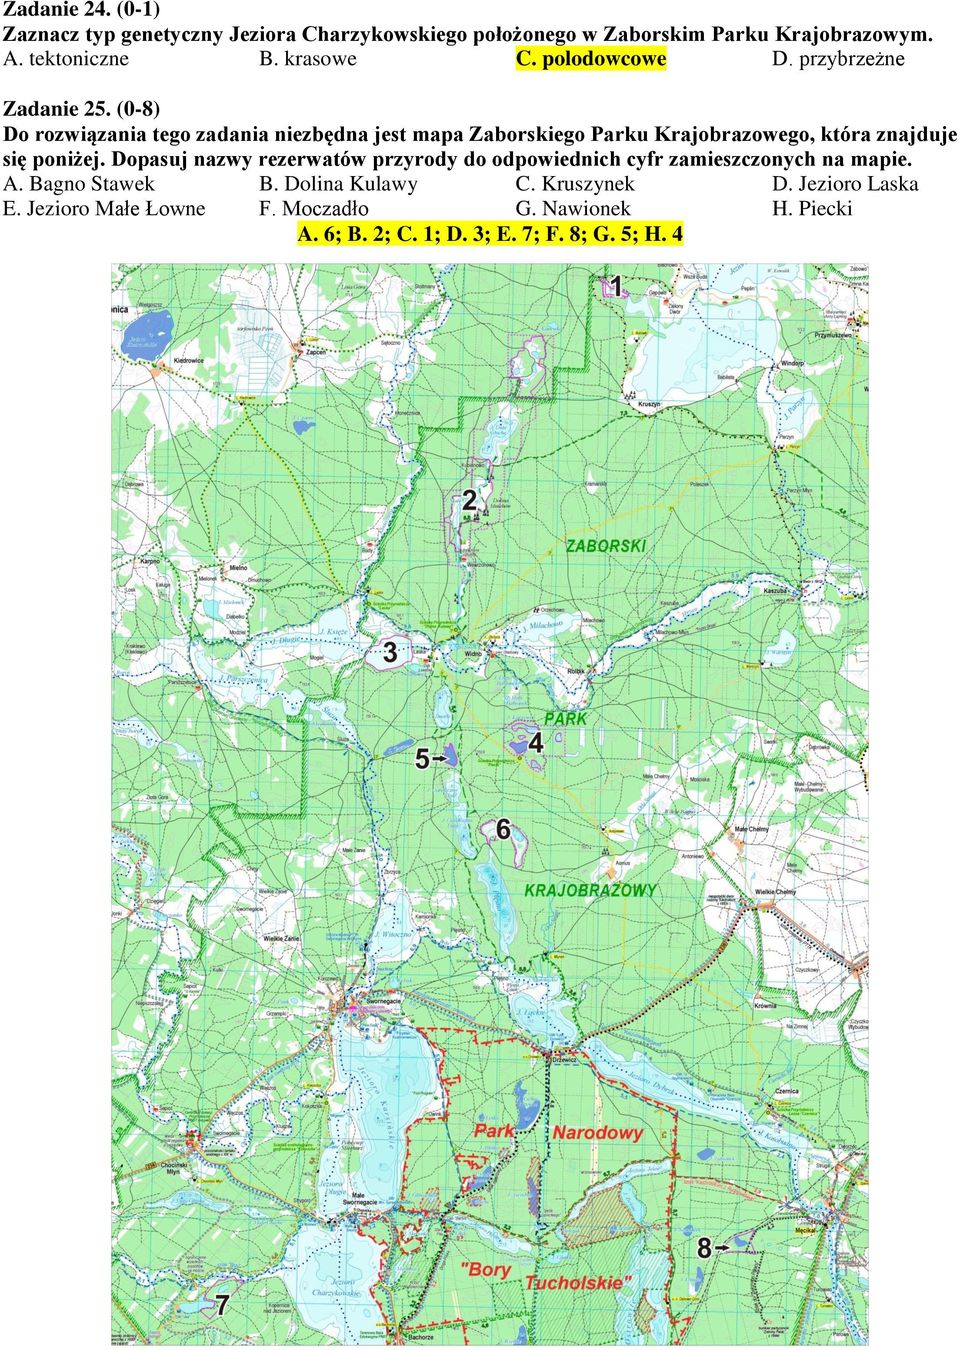 (0-8) Do rozwiązania tego zadania niezbędna jest mapa Zaborskiego Parku Krajobrazowego, która znajduje się poniżej.